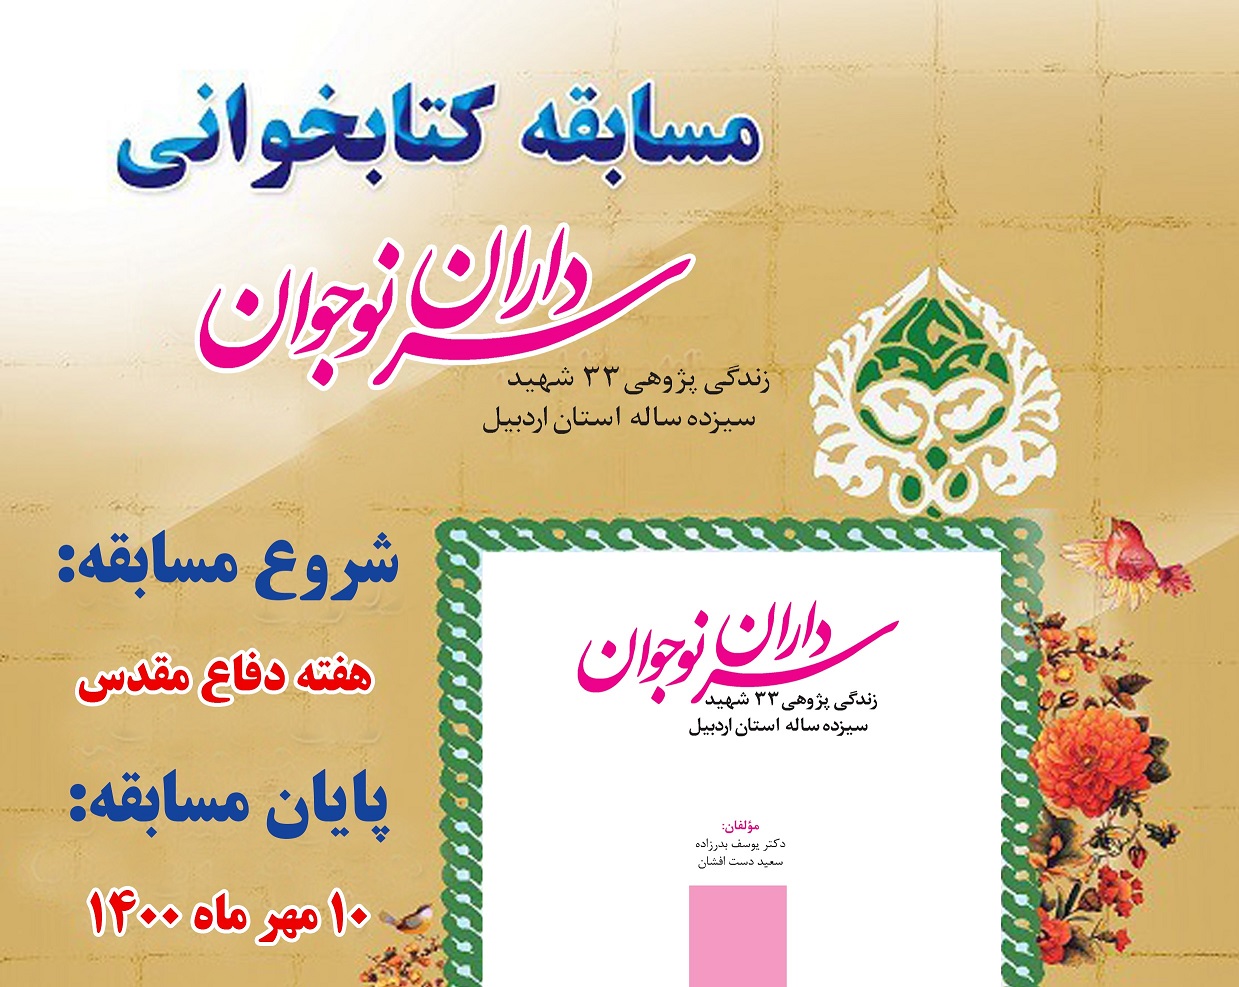 برگزاري مسابقه کتابخواني «سرداران نوجوان» در کانون هاي مساجد اردبيل